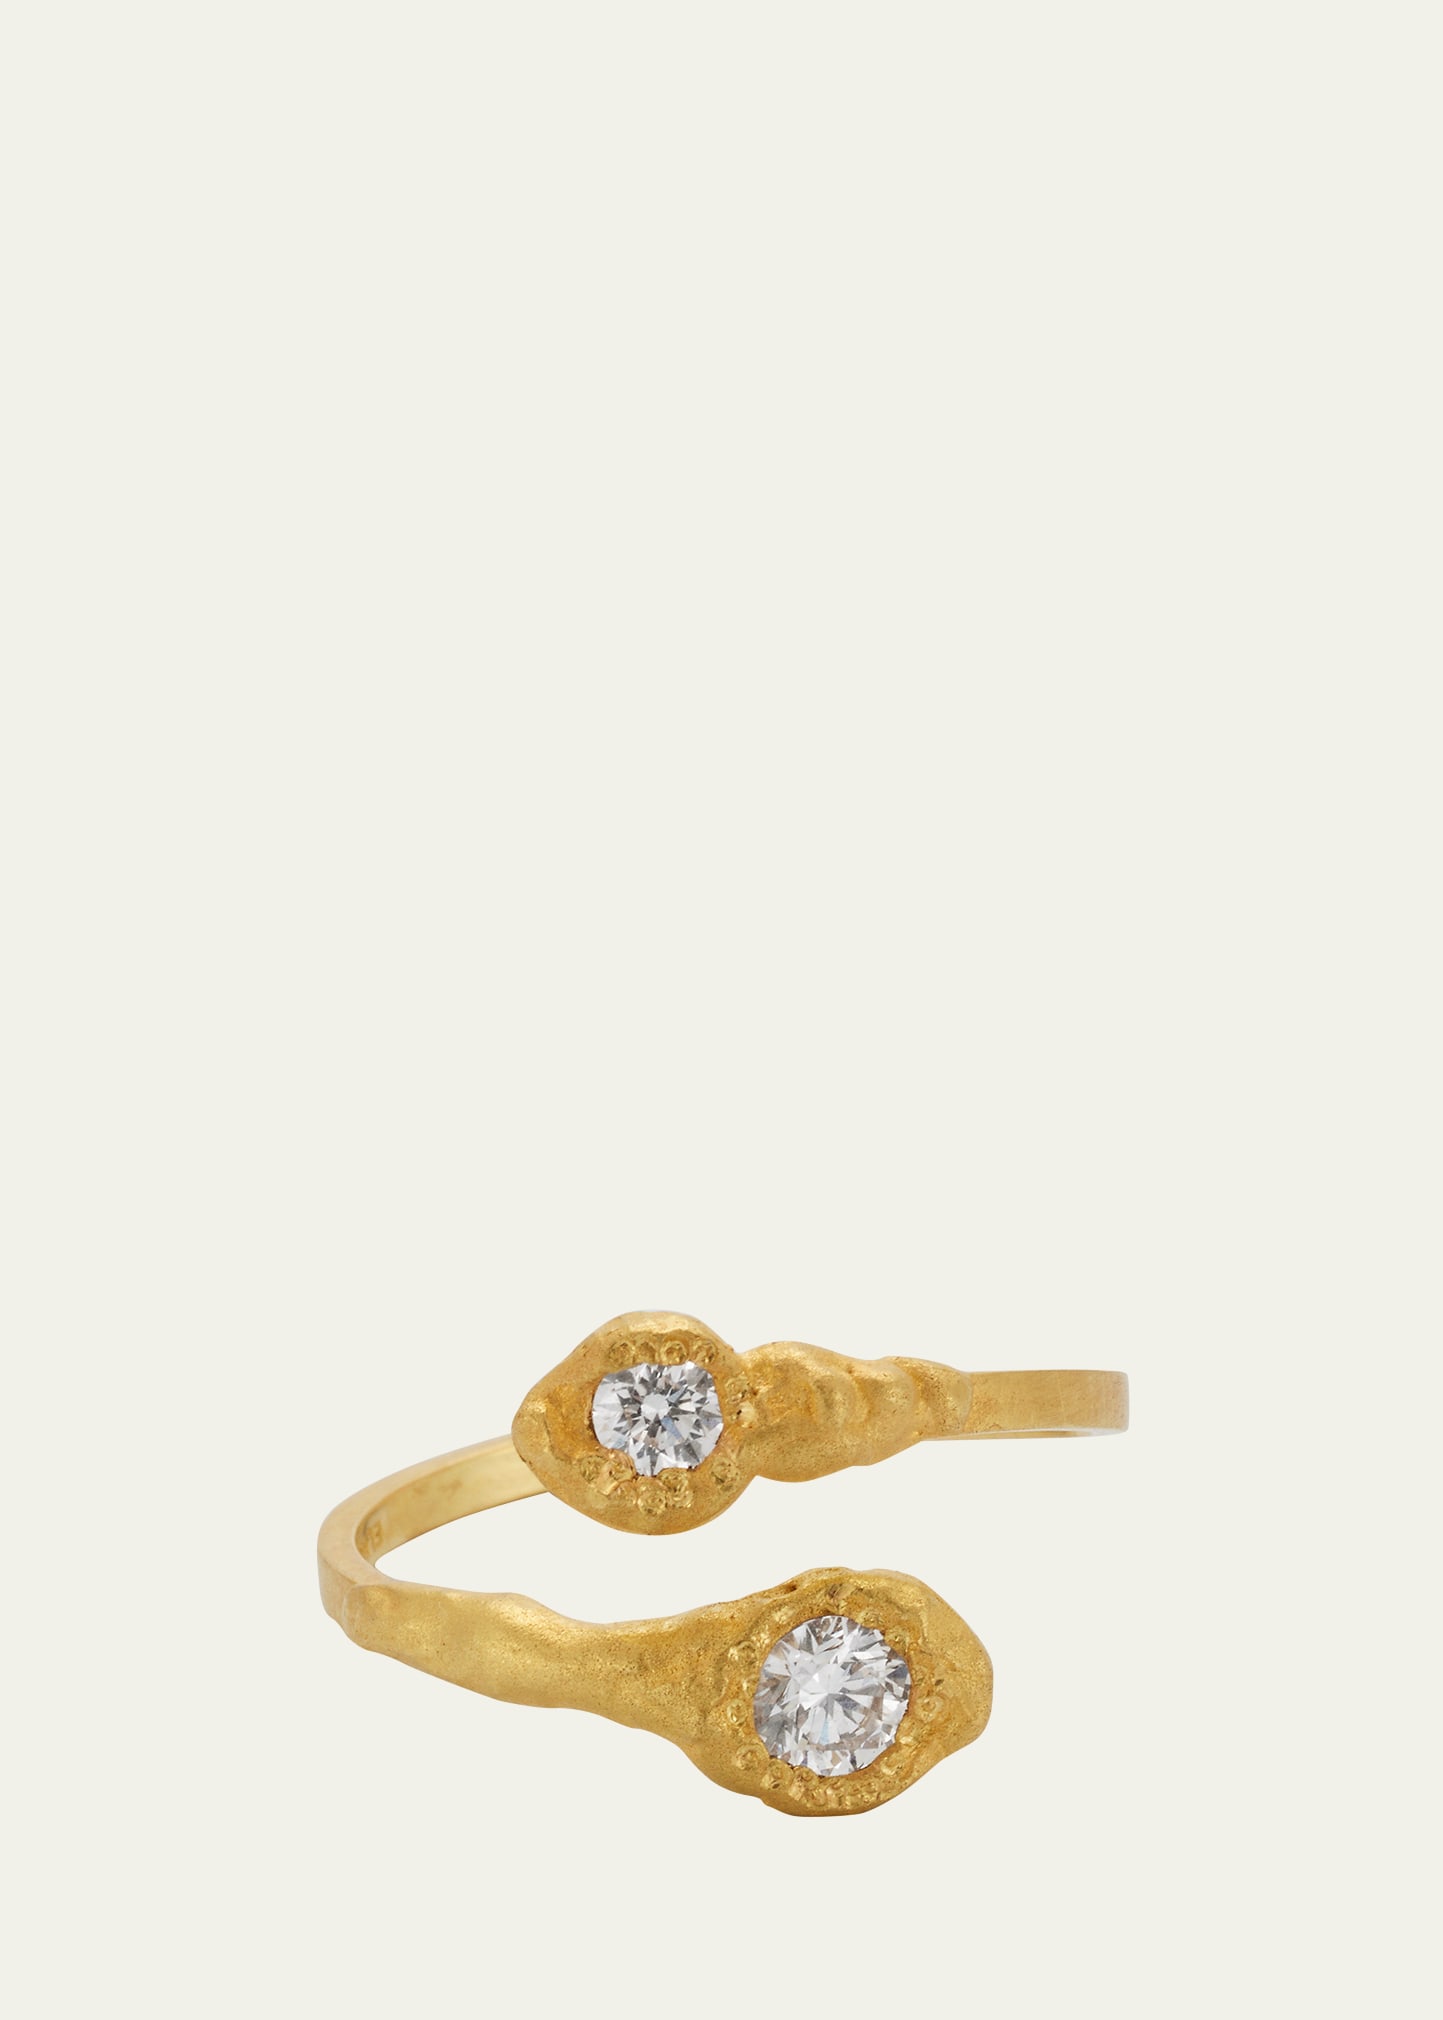 Elhanati 18K Yellow Gold Iman Duo Diamond Ring